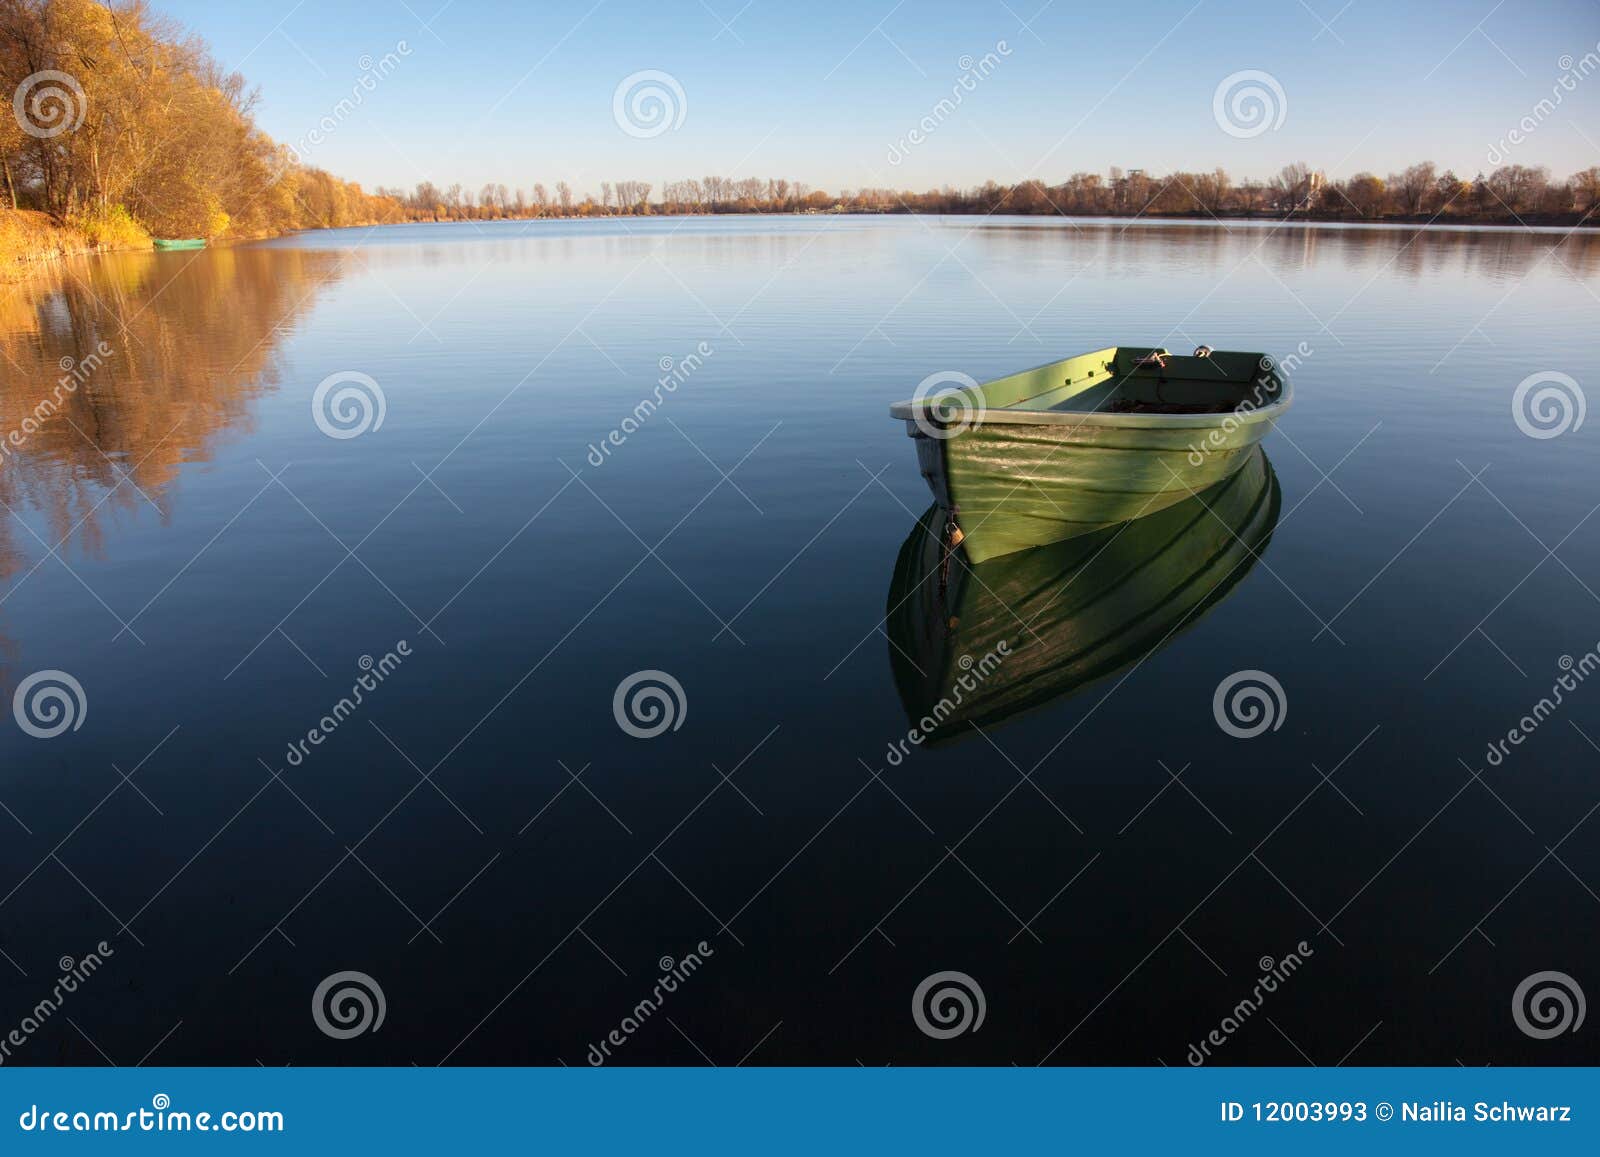 rowboat on lake